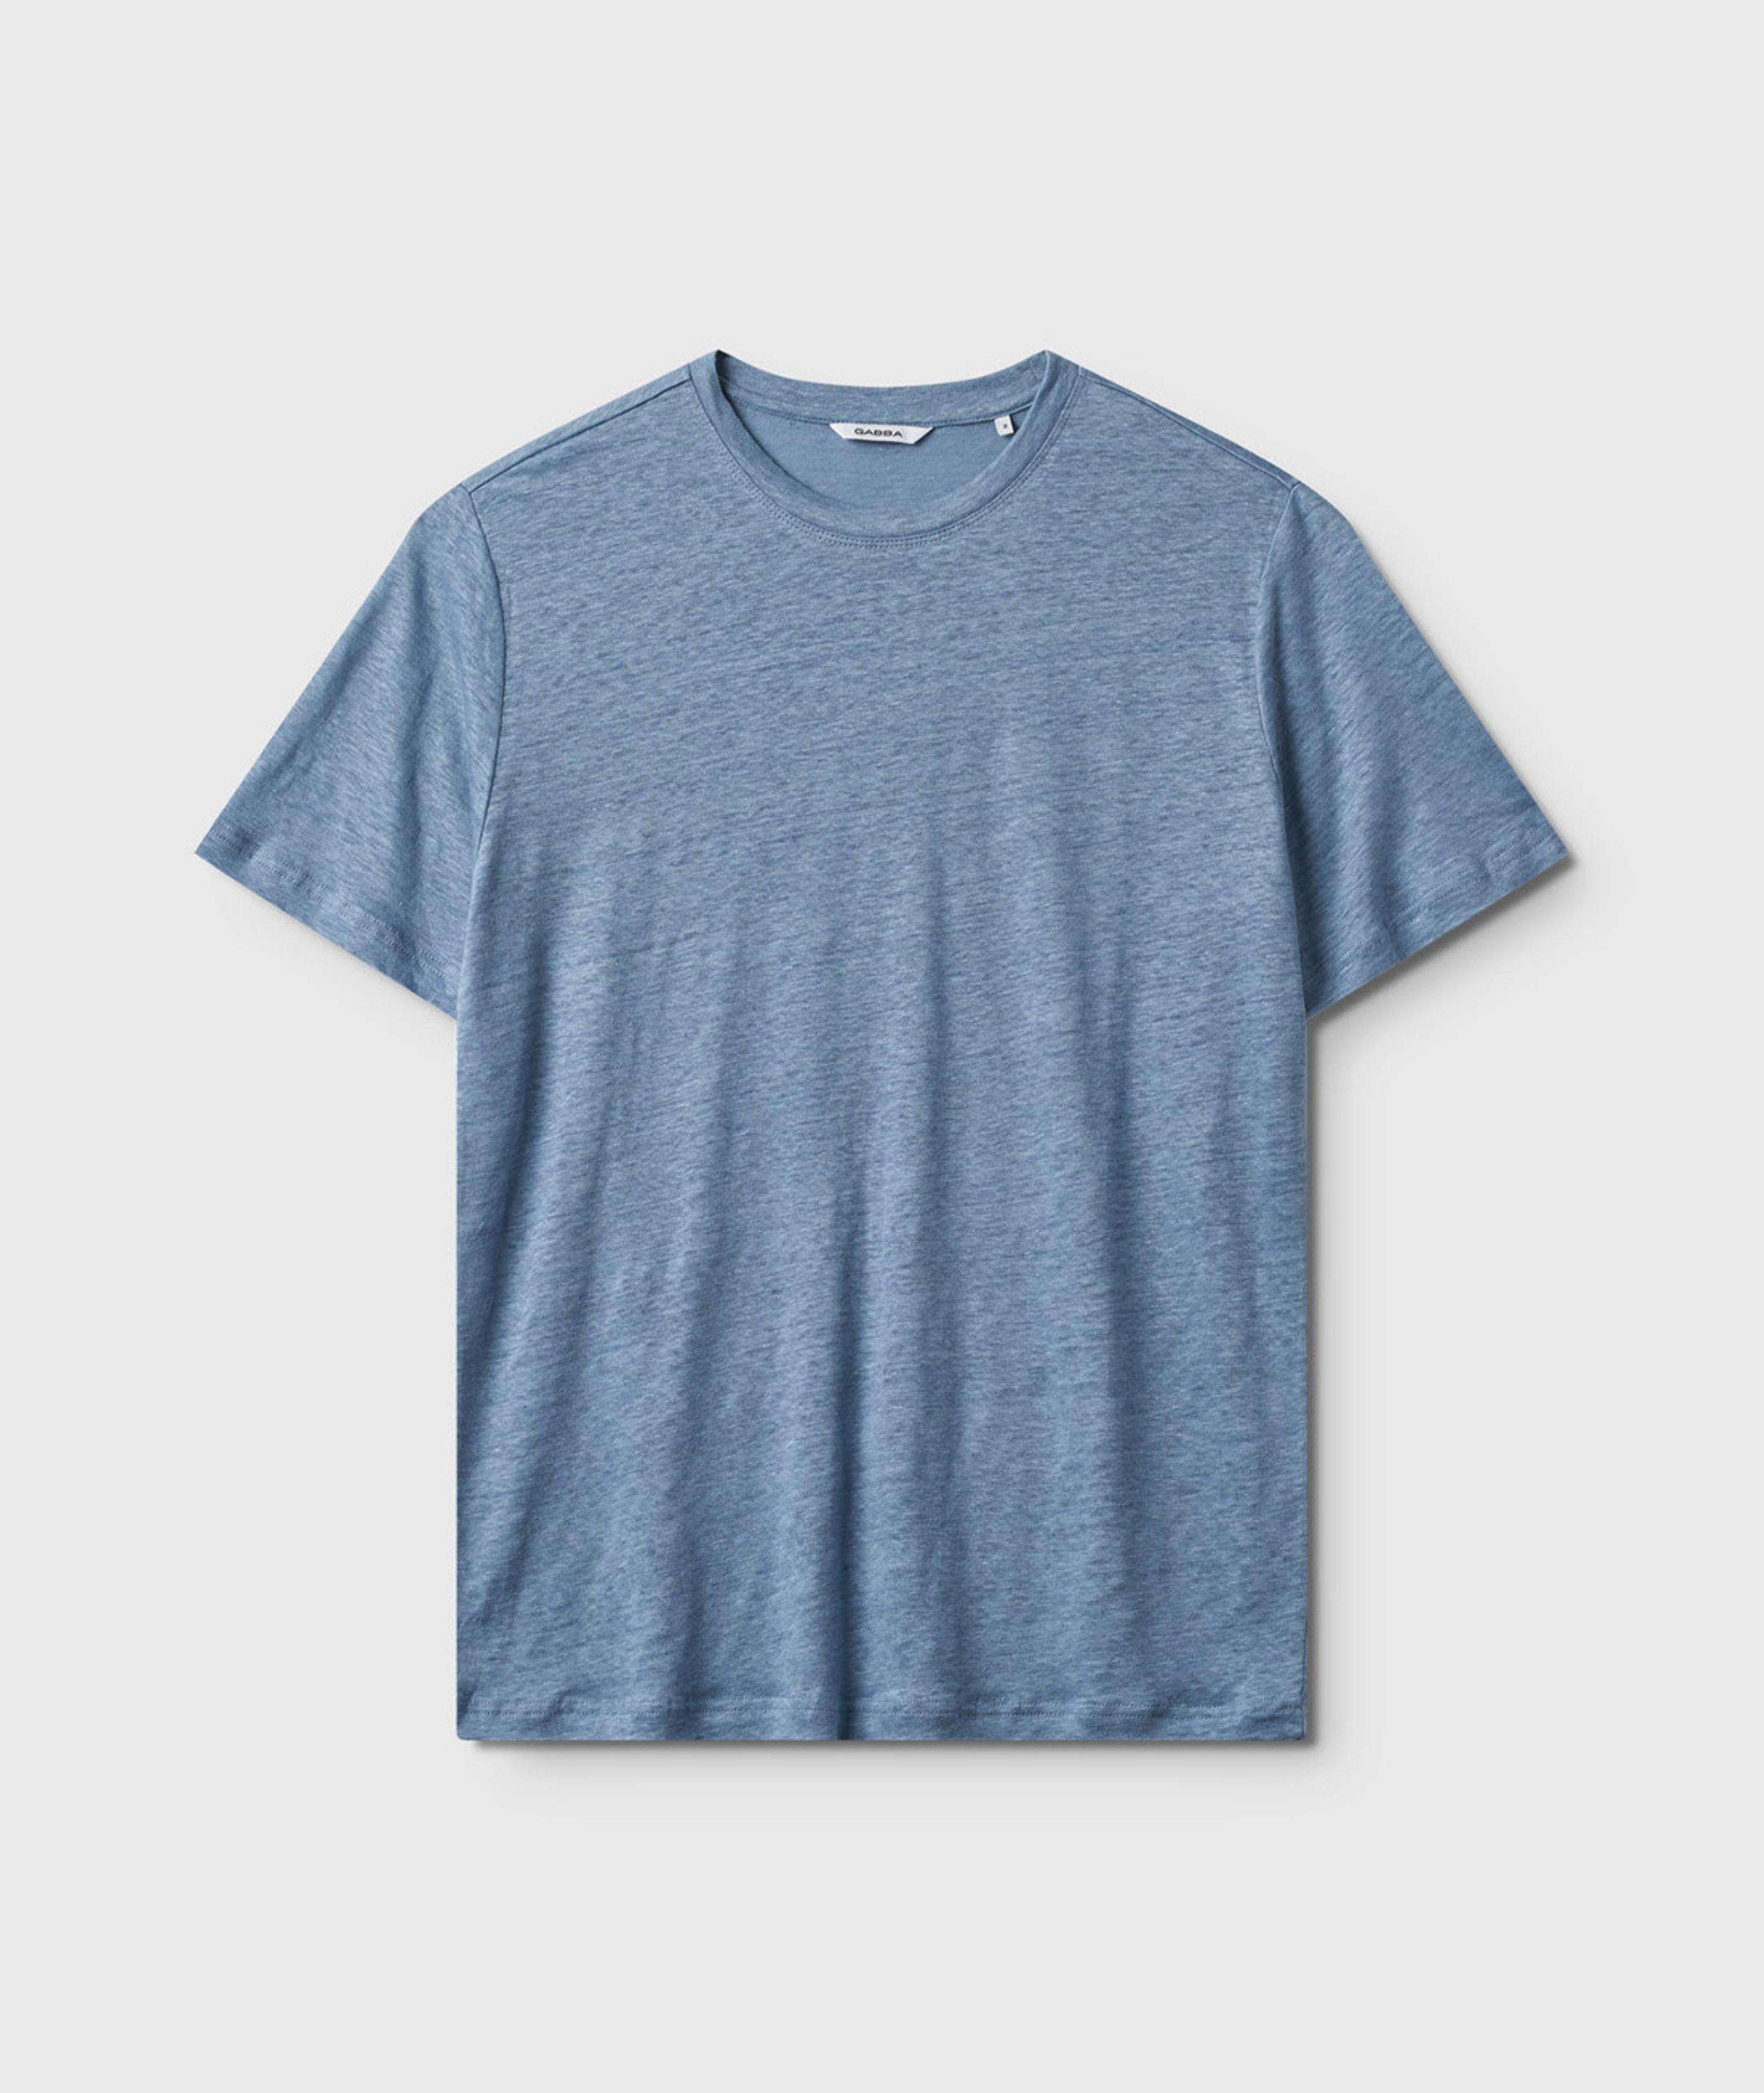 Duke Linen T-Shirt image 0